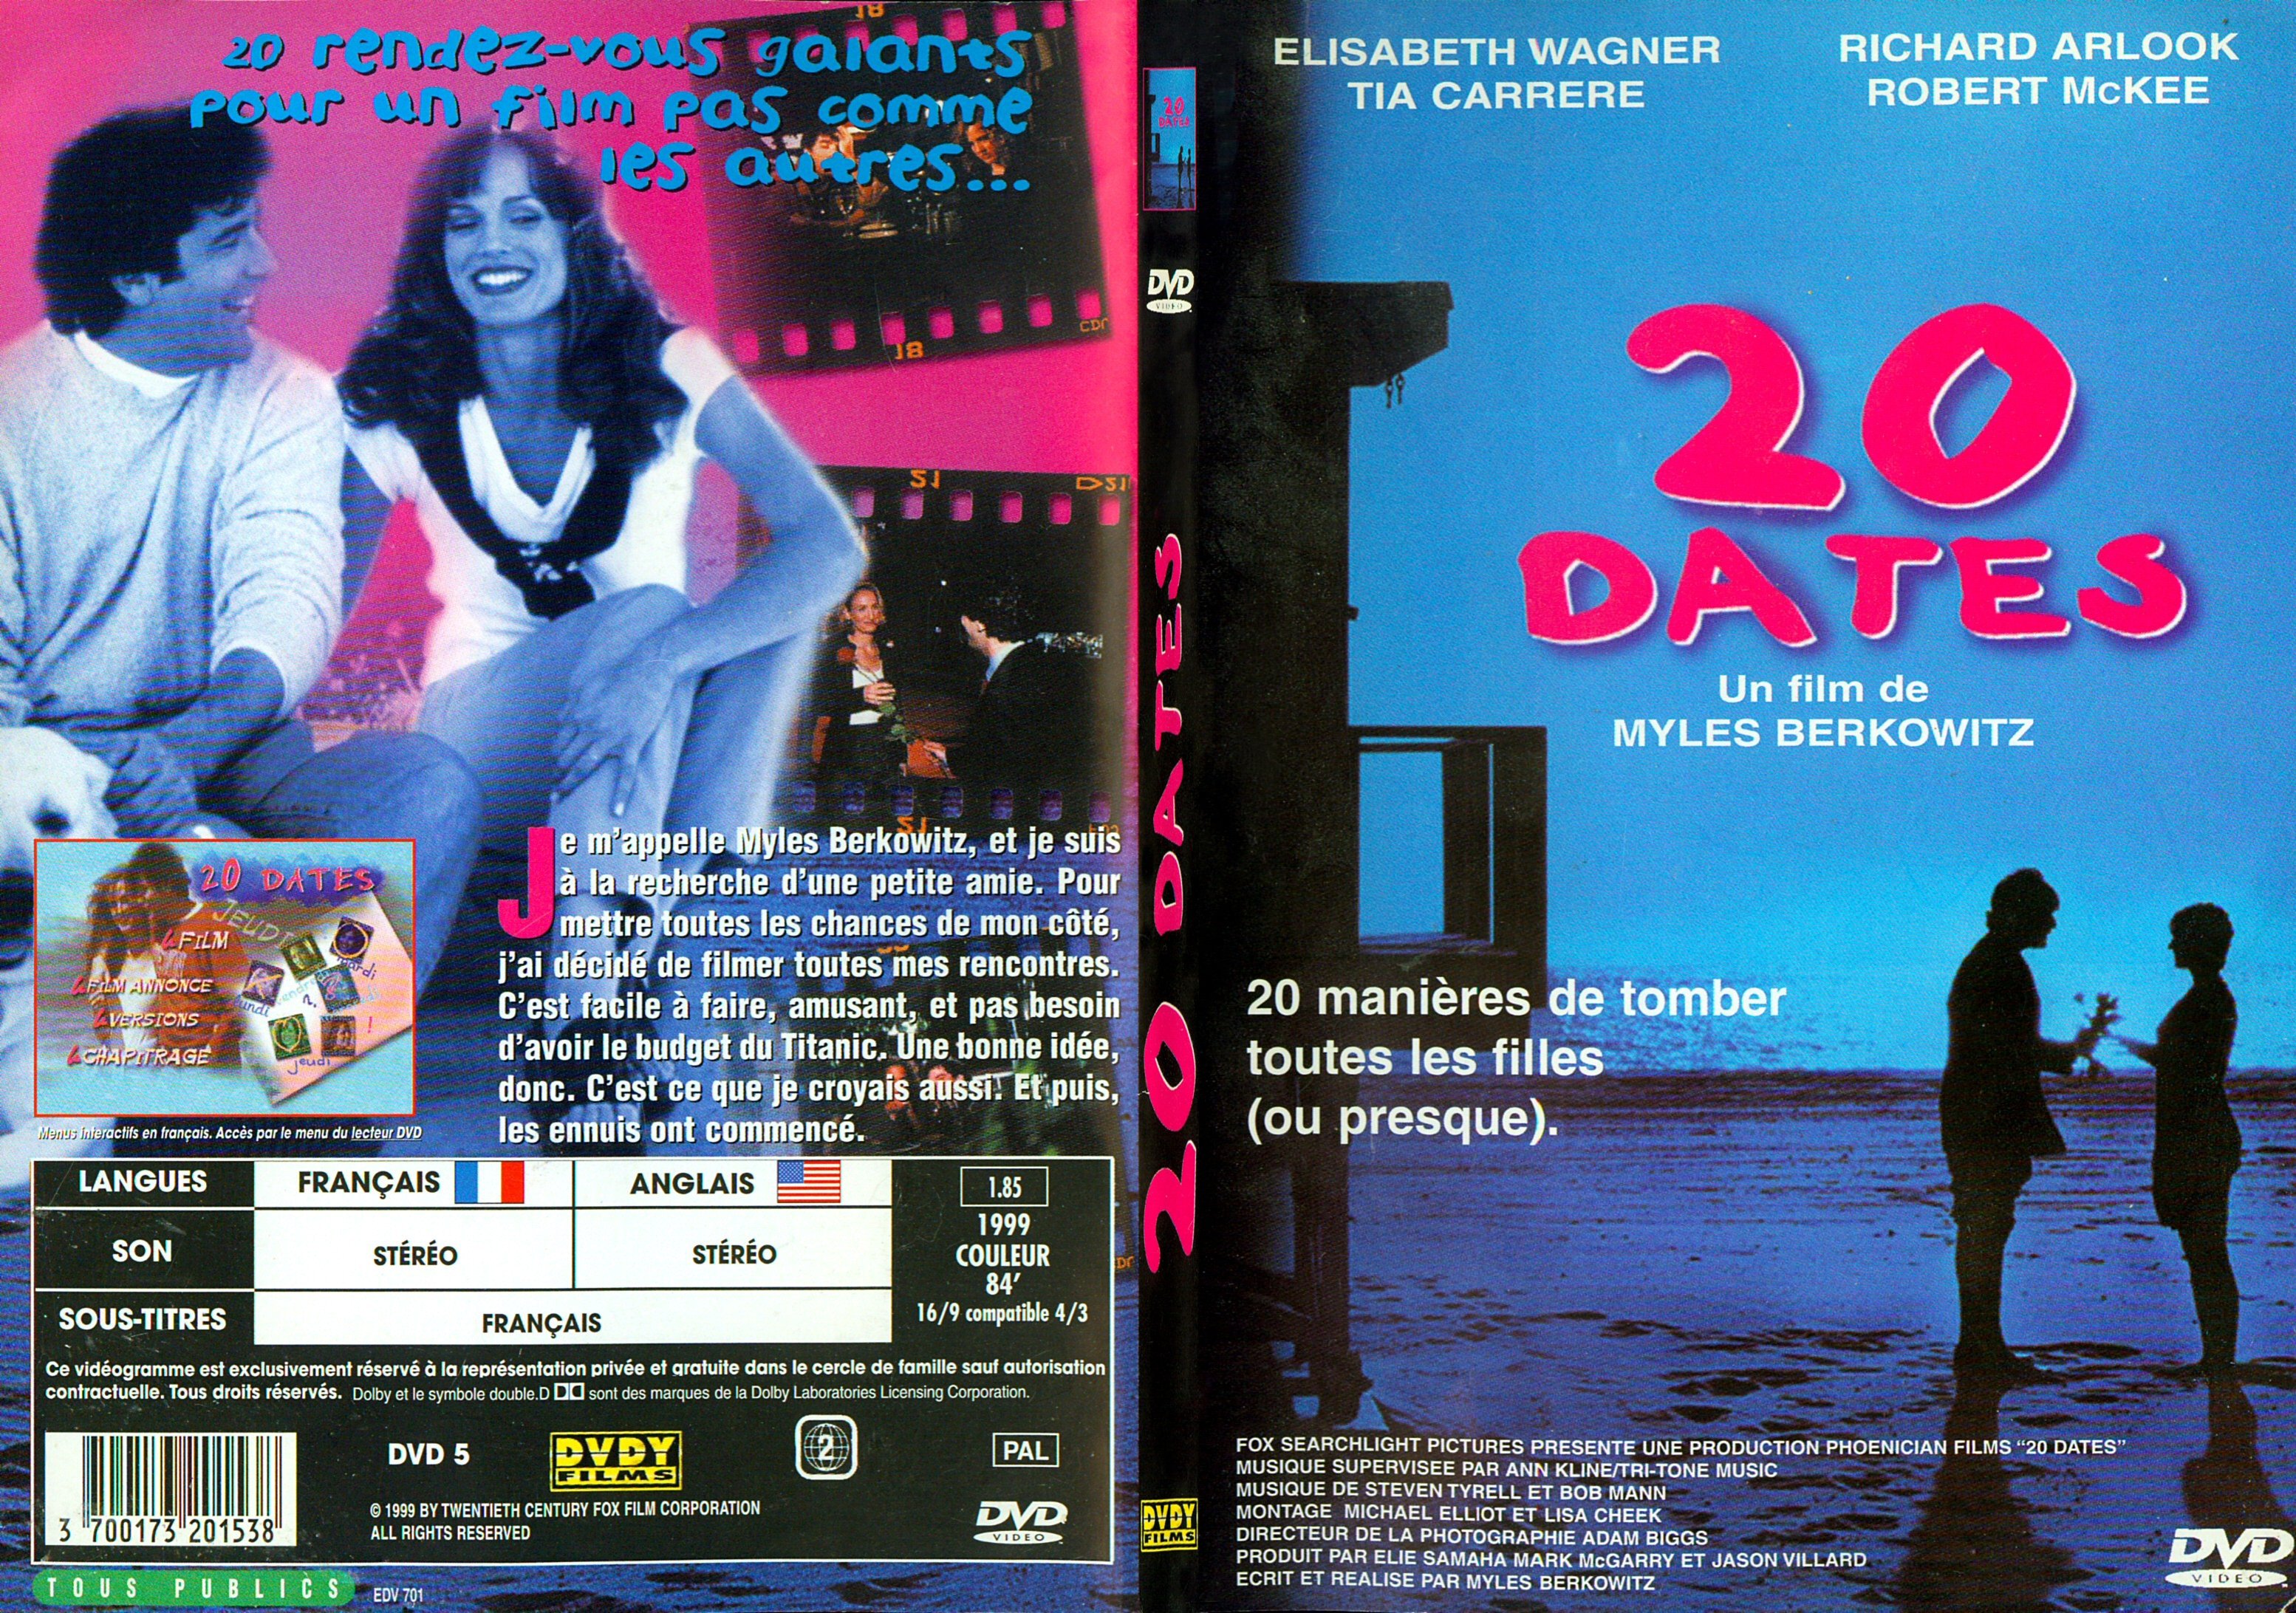 Jaquette DVD 20 dates - SLIM